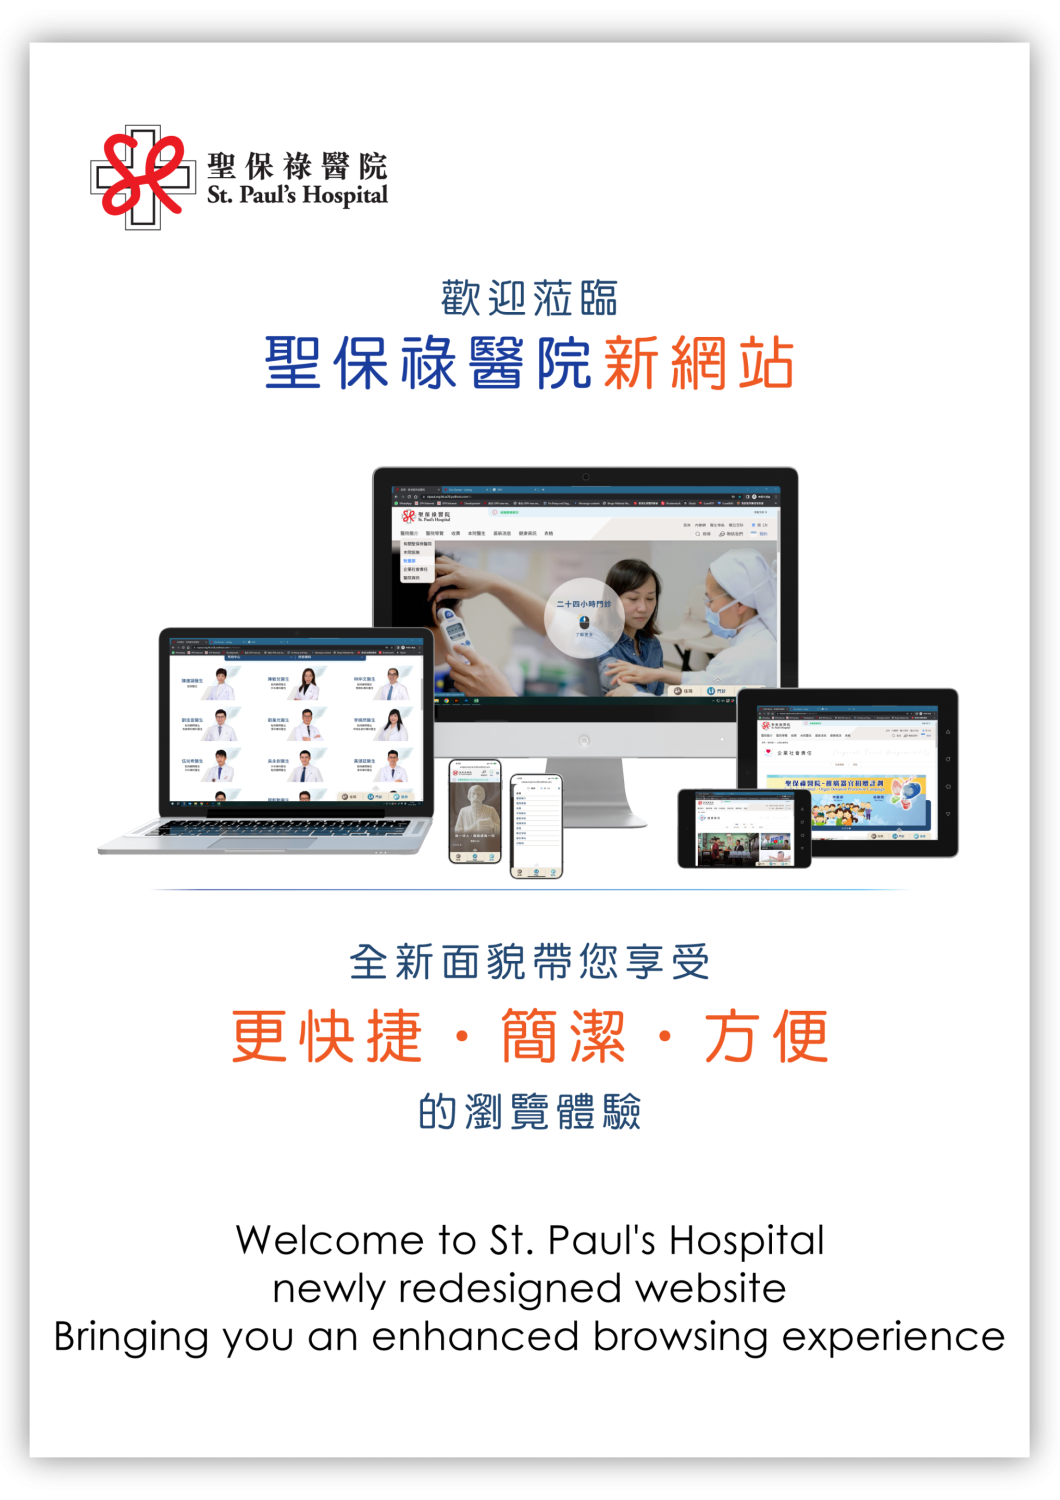 聖保祿醫院新網站 St. Paul's Hospital New website